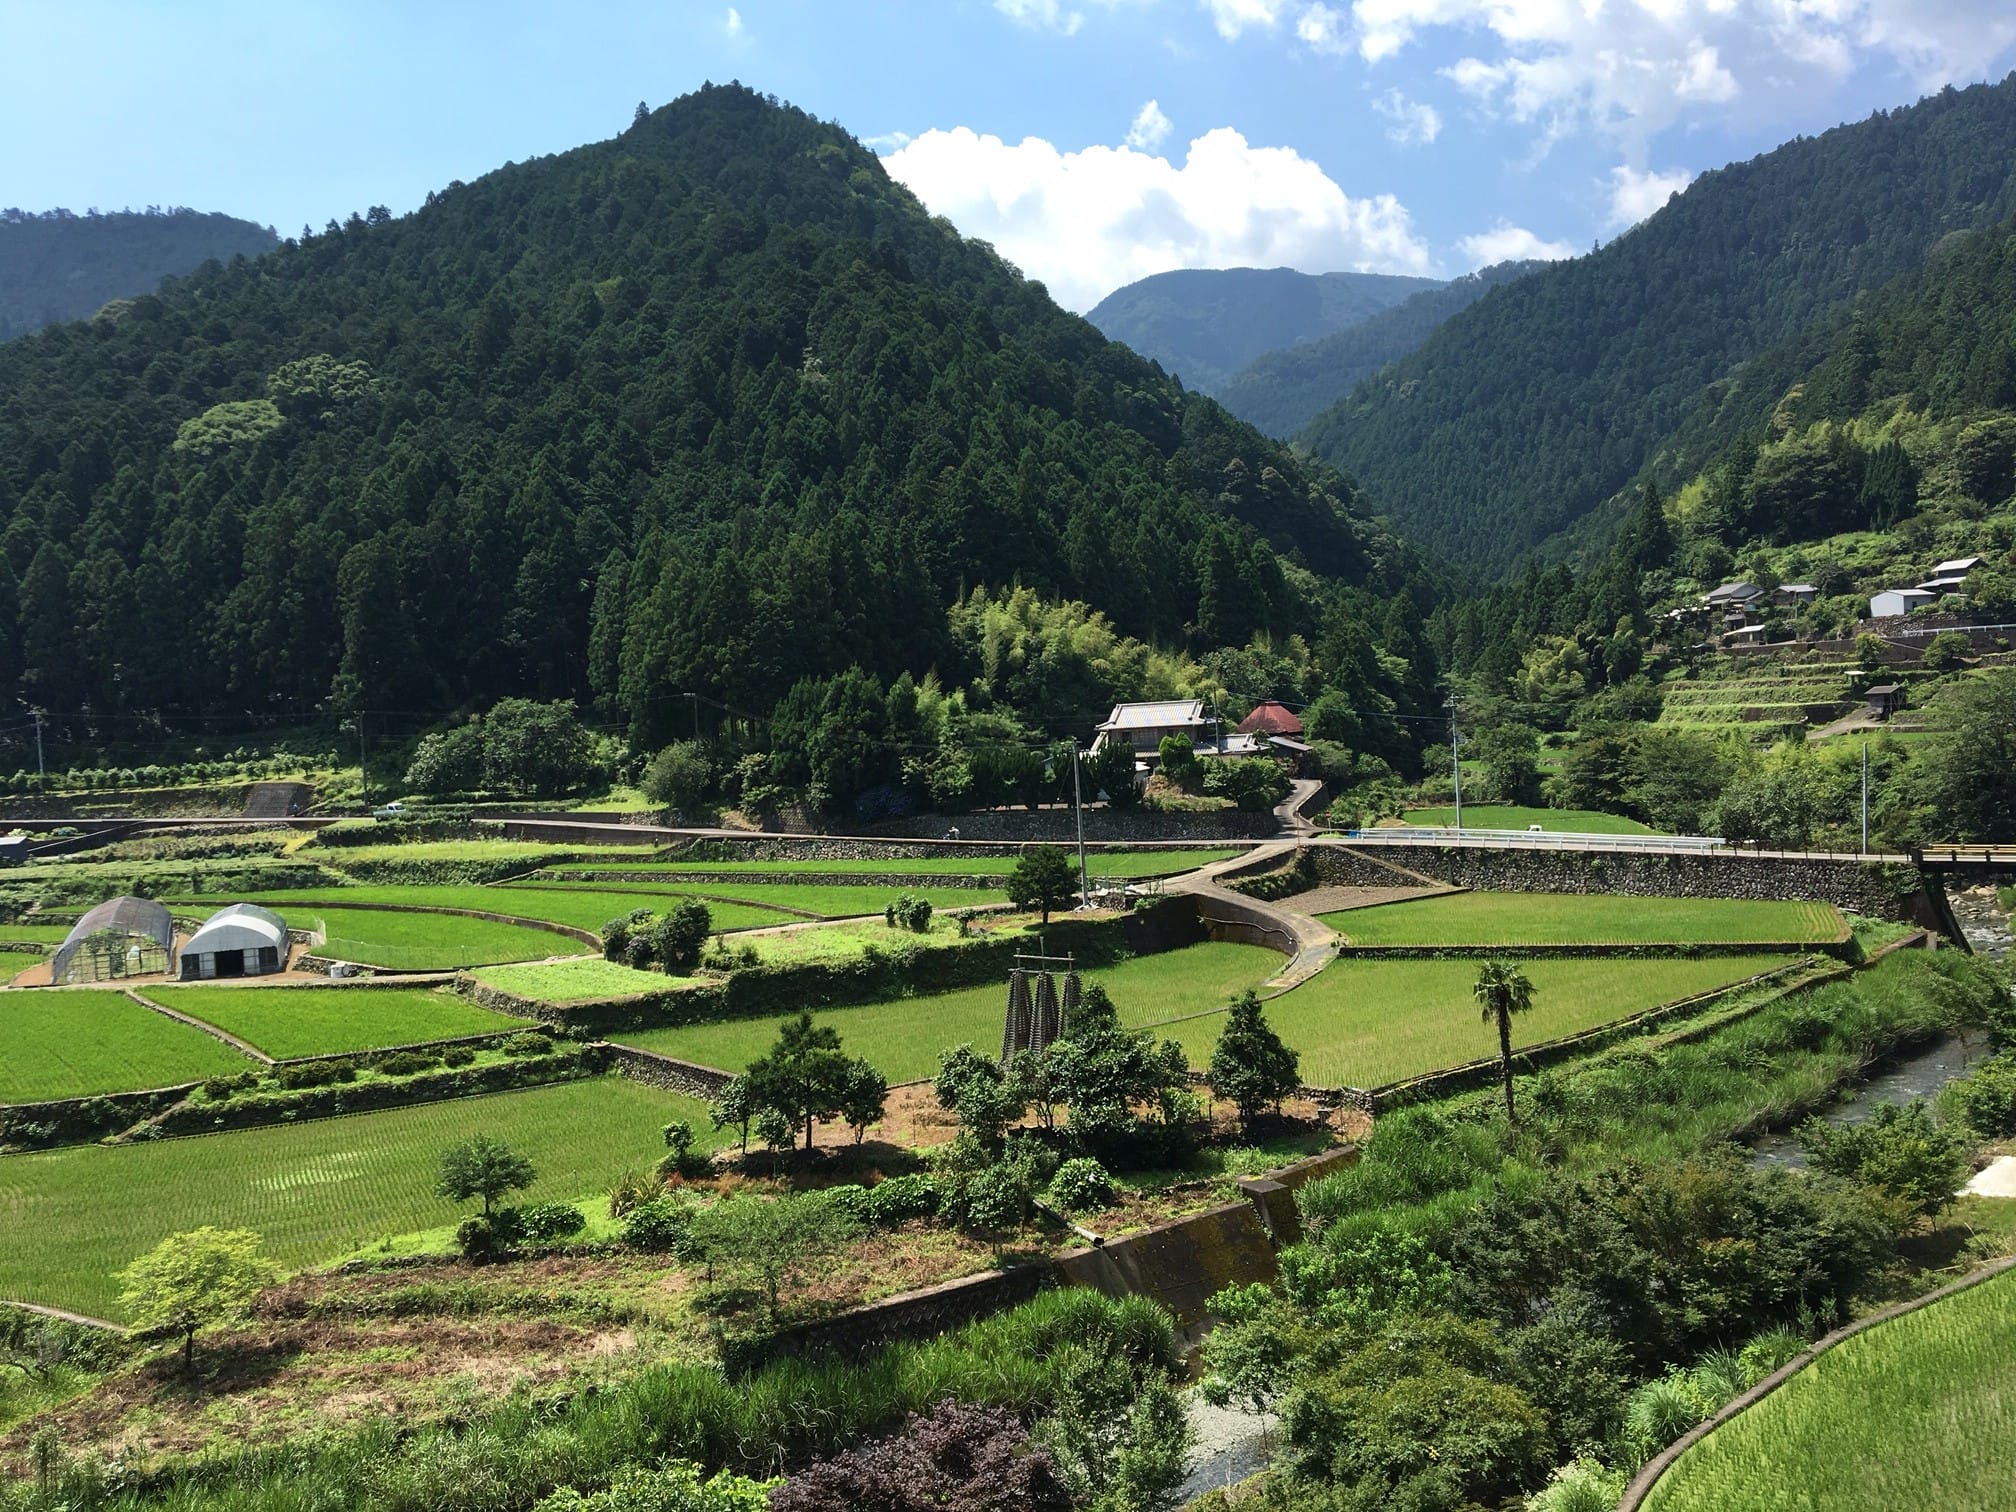 山間にひろがる棚田の風景も、神山の顔のひとつ。